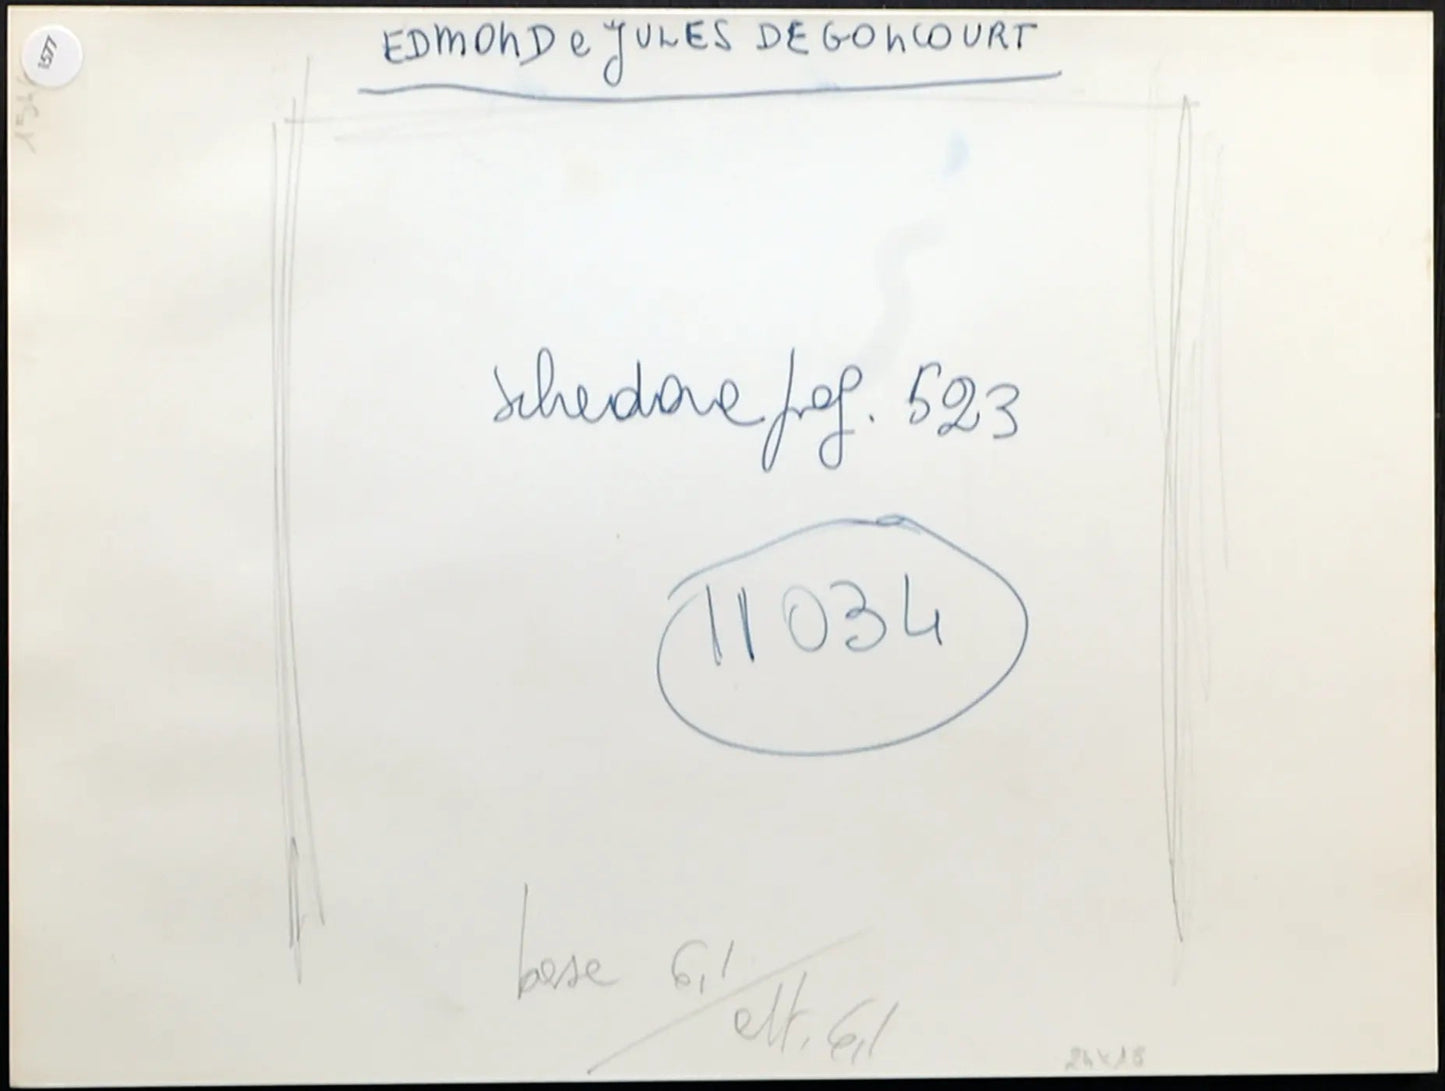 Edmond e Jules de Goncourt Ft 1577 - Stampa 24x18 cm - Farabola Stampa ai sali d'argento